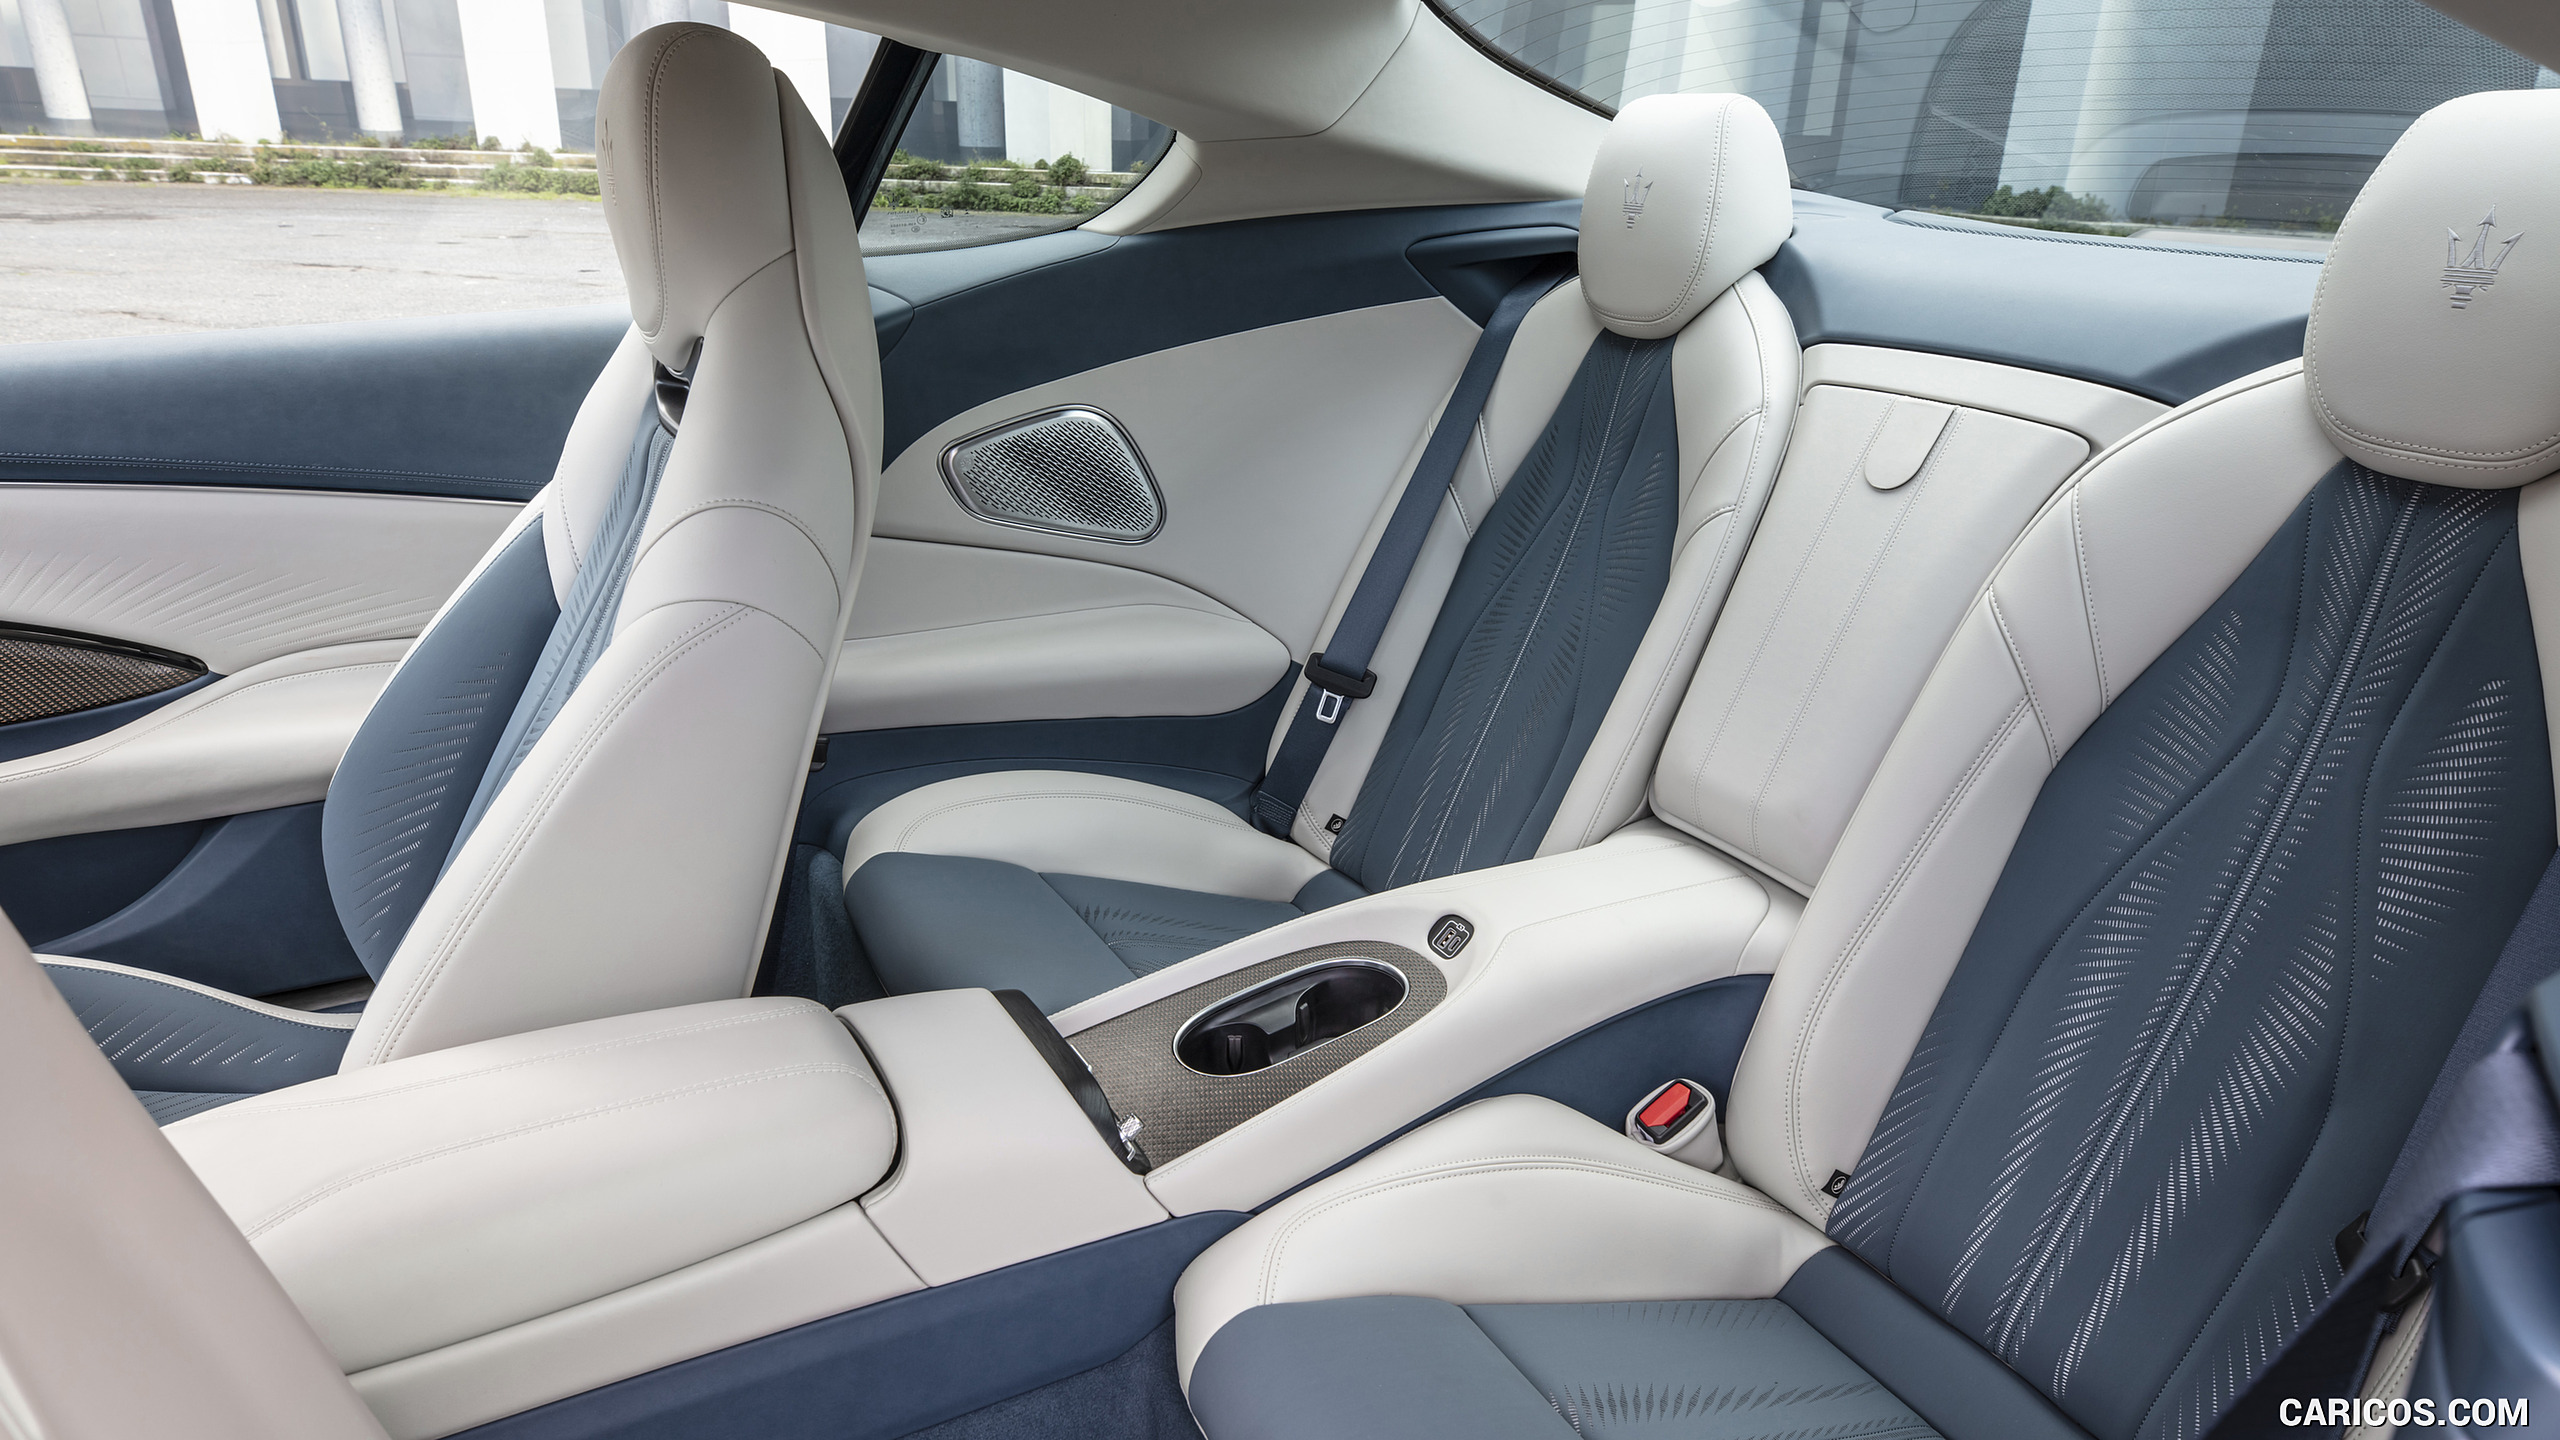 2023 Maserati GranTurismo Folgore (Color: Copper Glance) - Interior, Rear Seats, #100 of 155